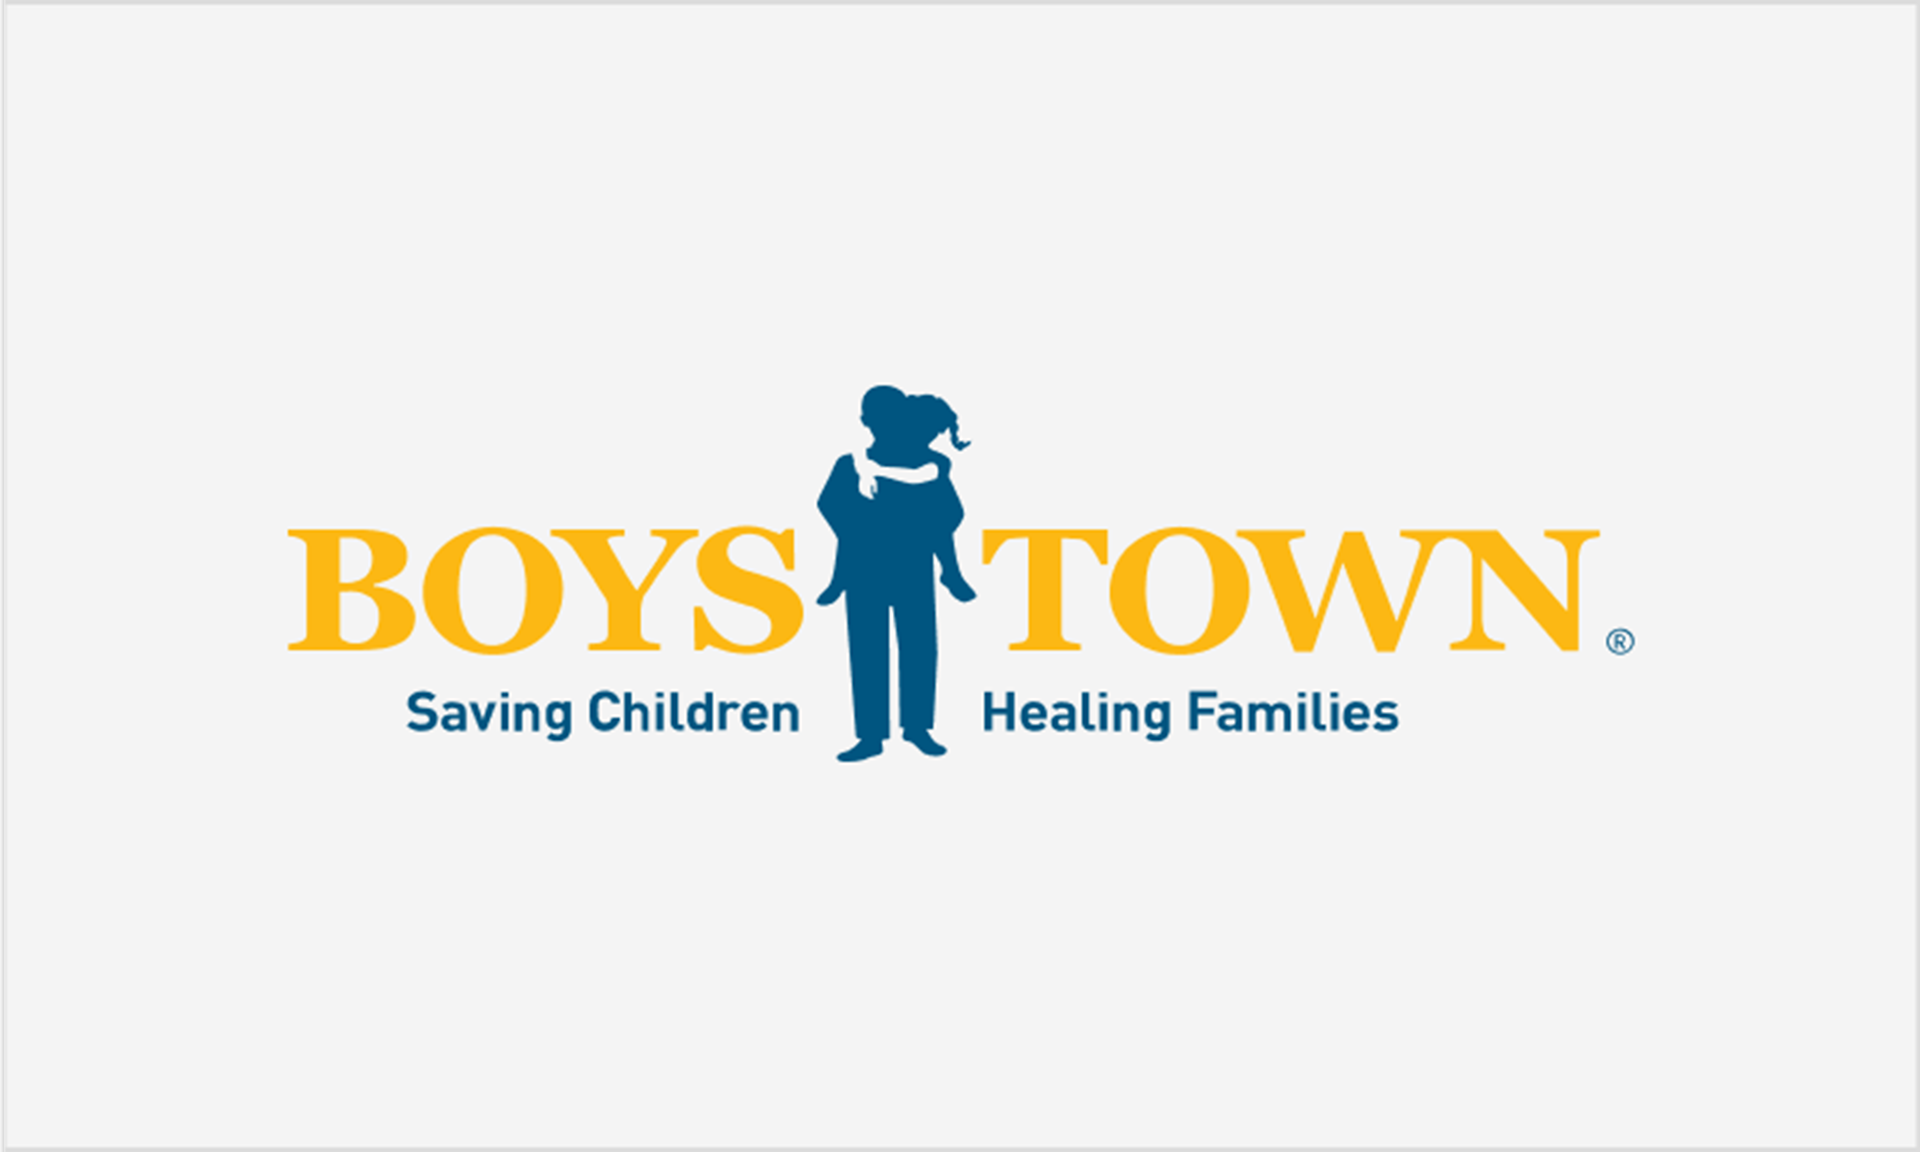 boys town logo